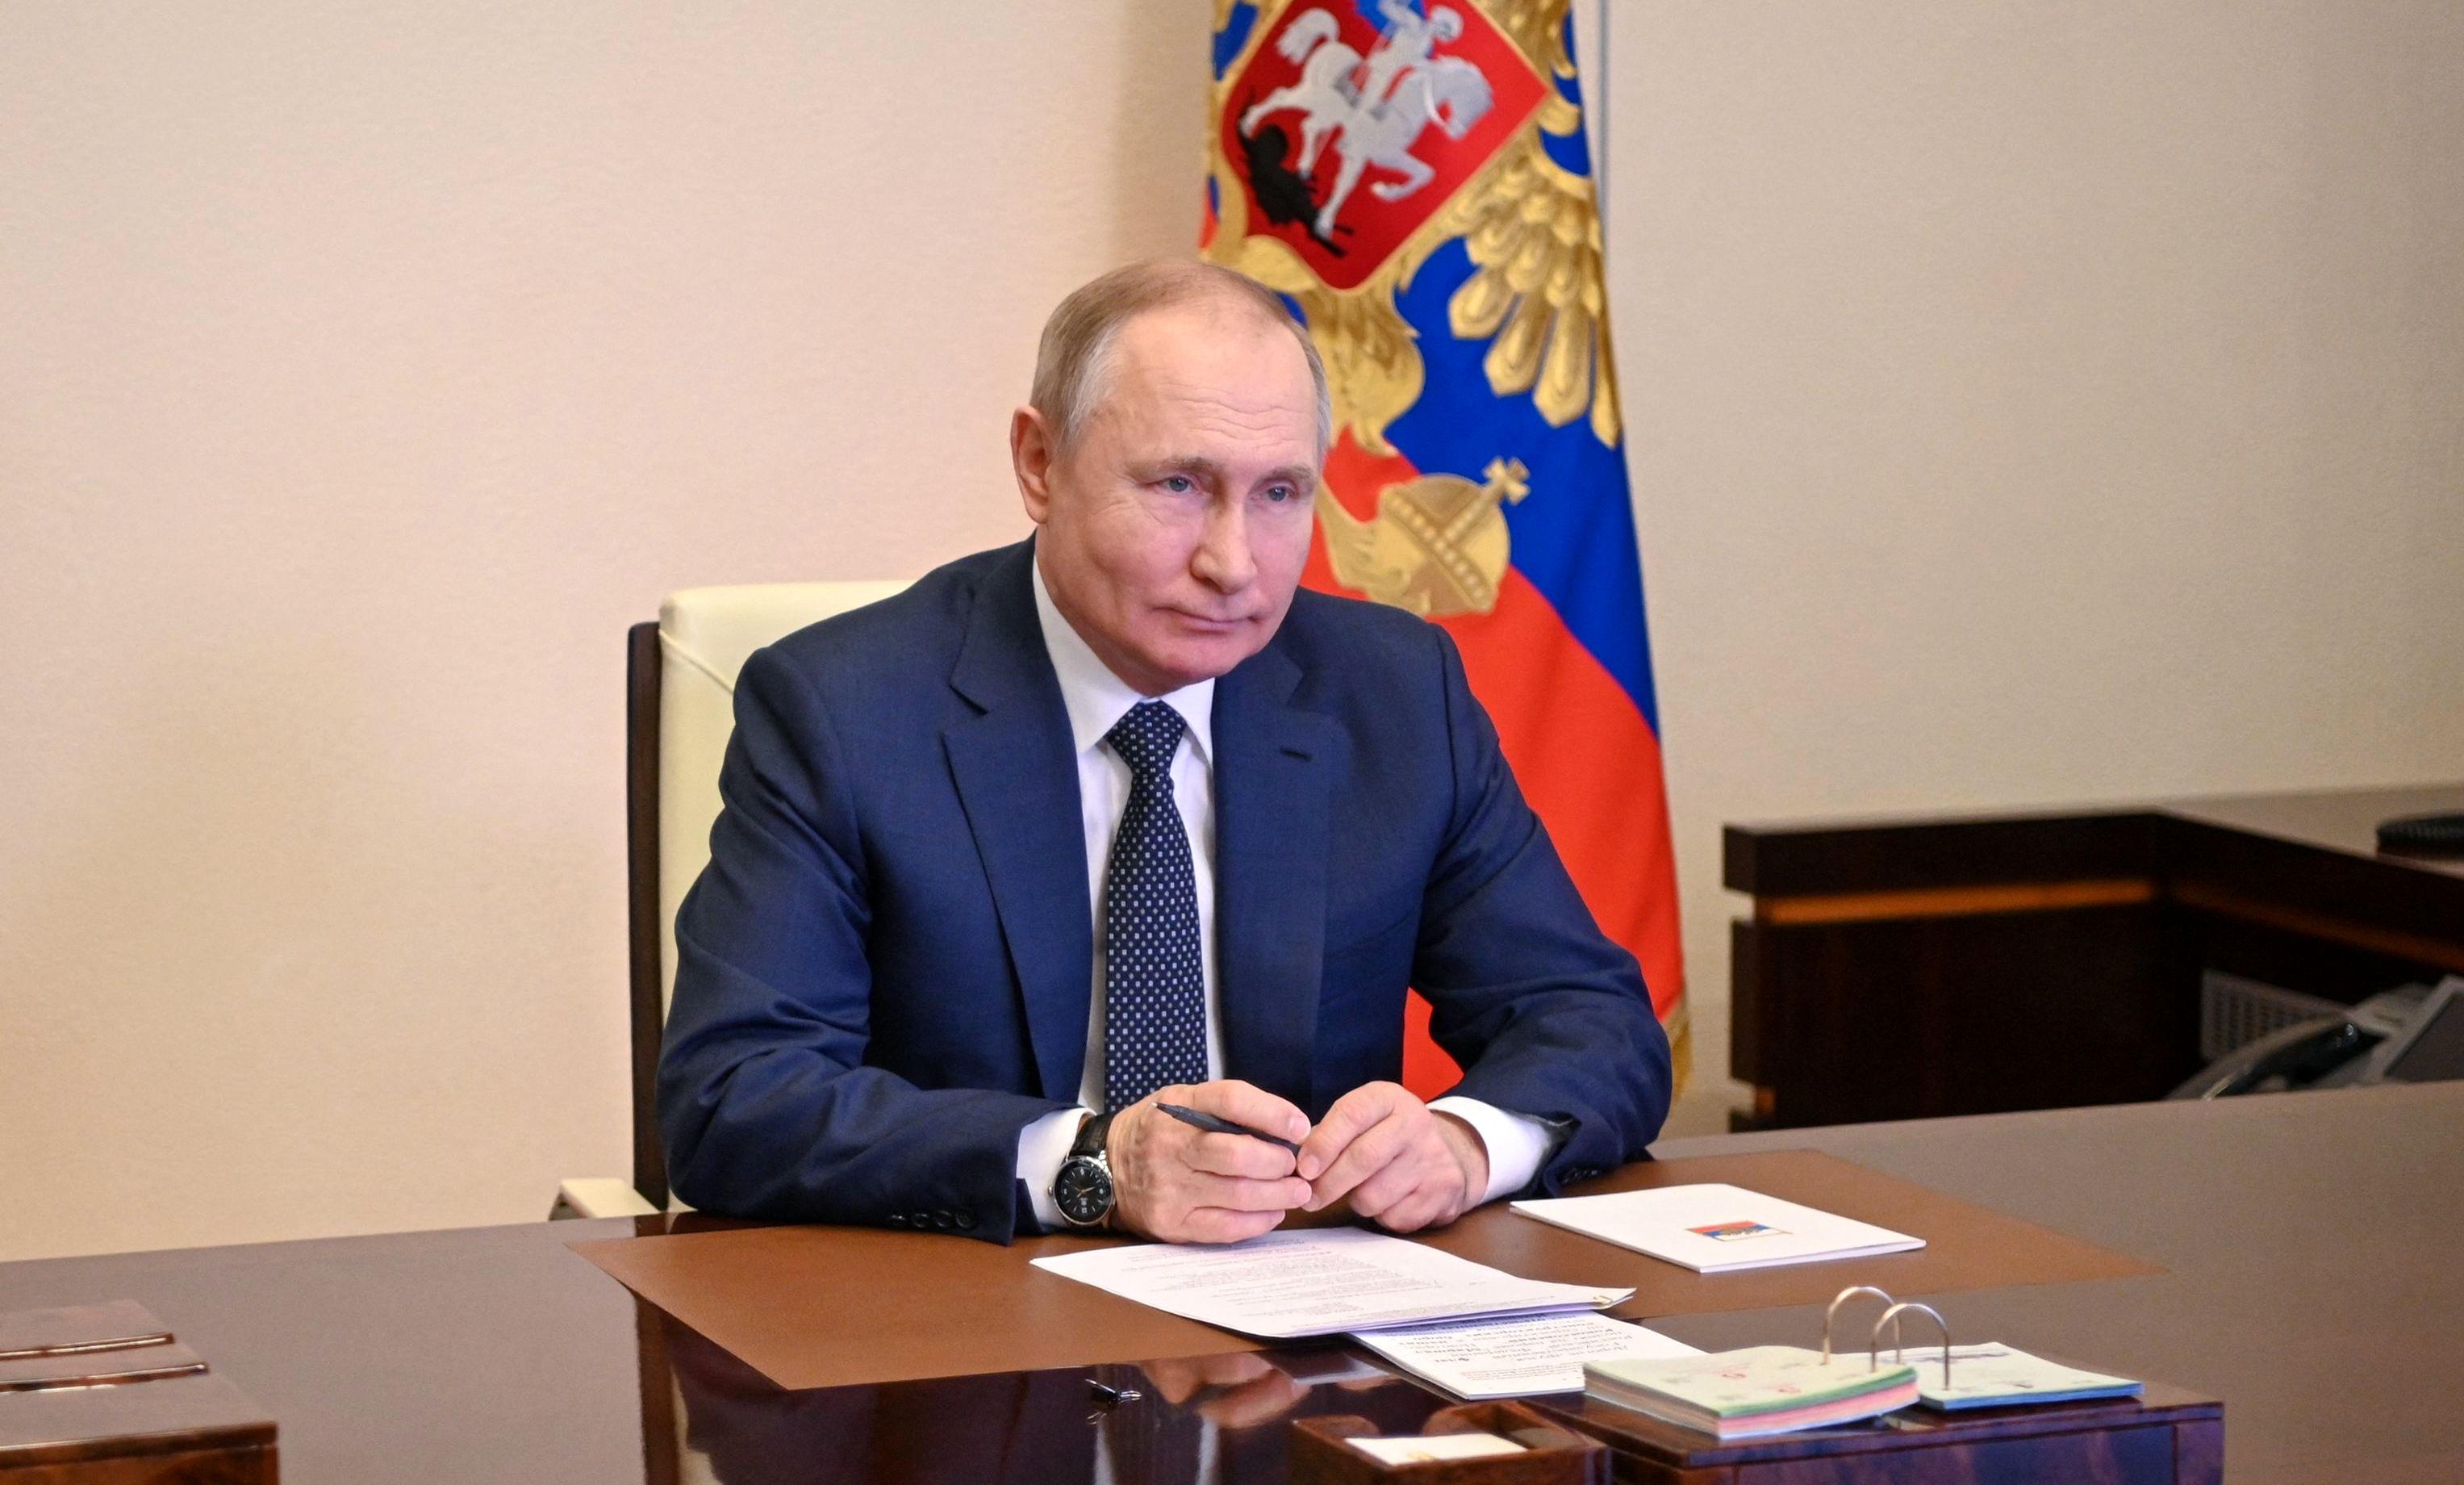 زمان سخنرانی مهم پوتین در وزارت دفاع اعلام شد
